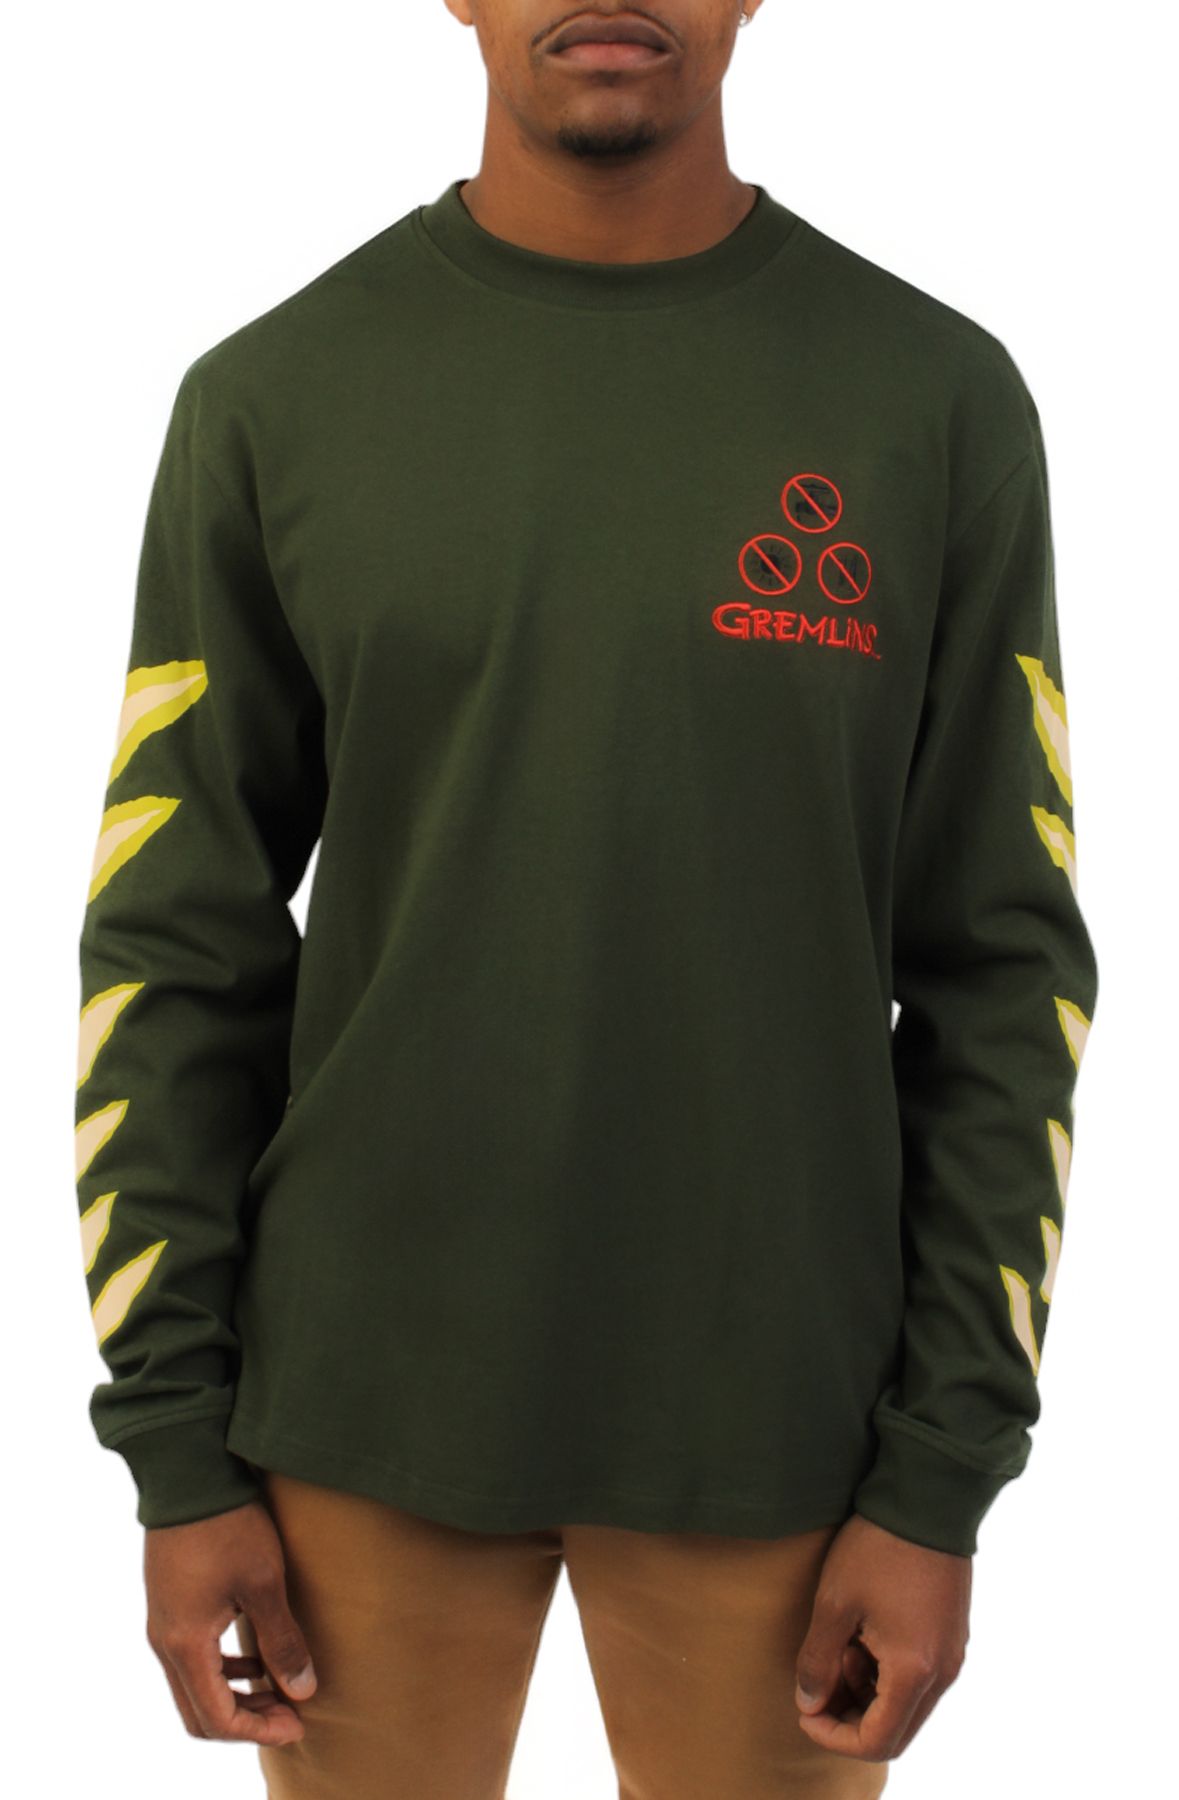 PUMA Gremlins Long Sleeve T-Shirt Shiekh - 62535701